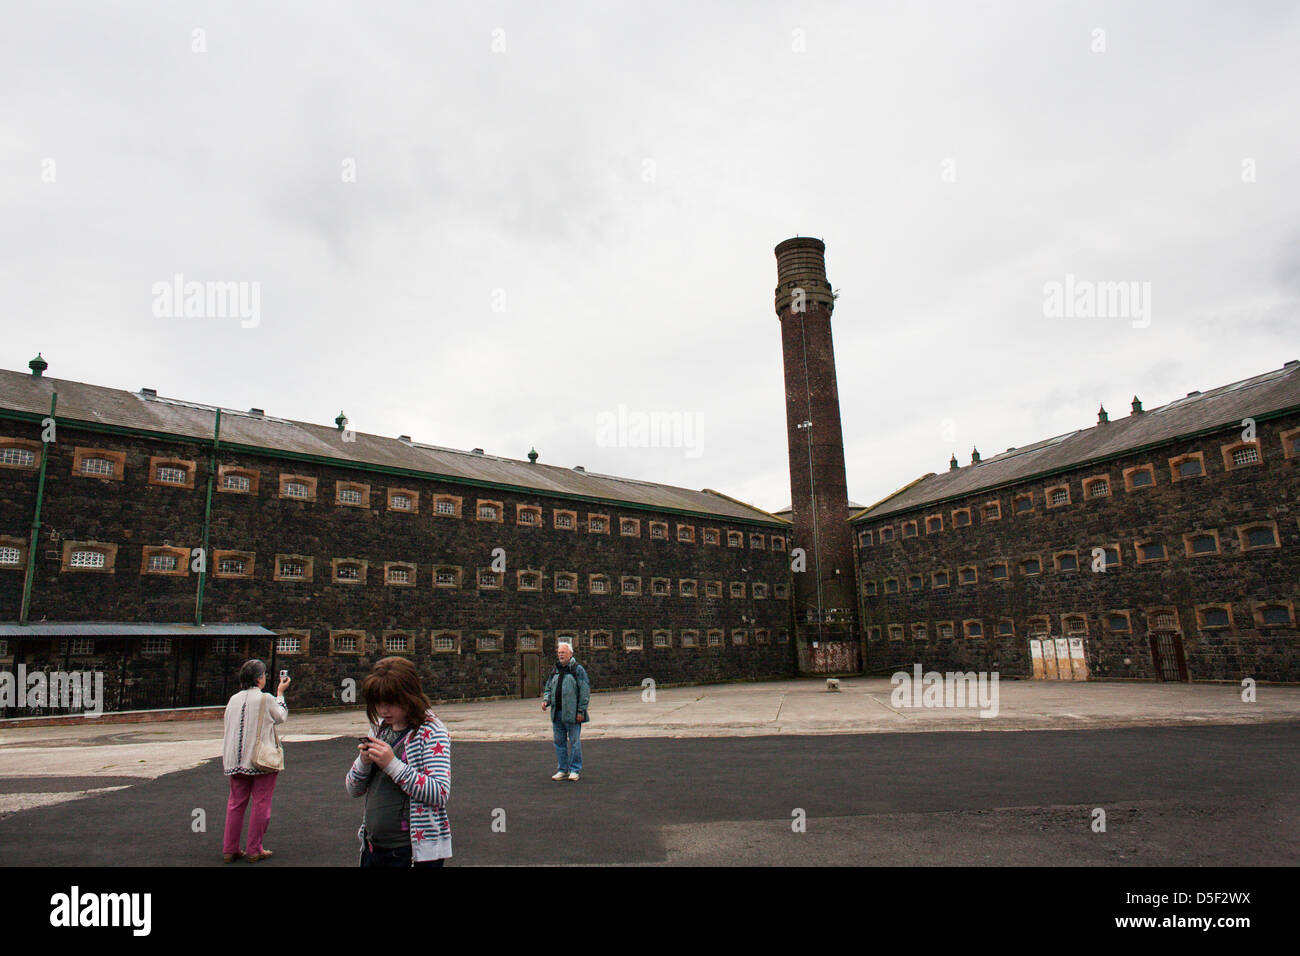 Les touristes visitent la prison de Crumlin Road, Belfast, Irlande du Nord. Banque D'Images